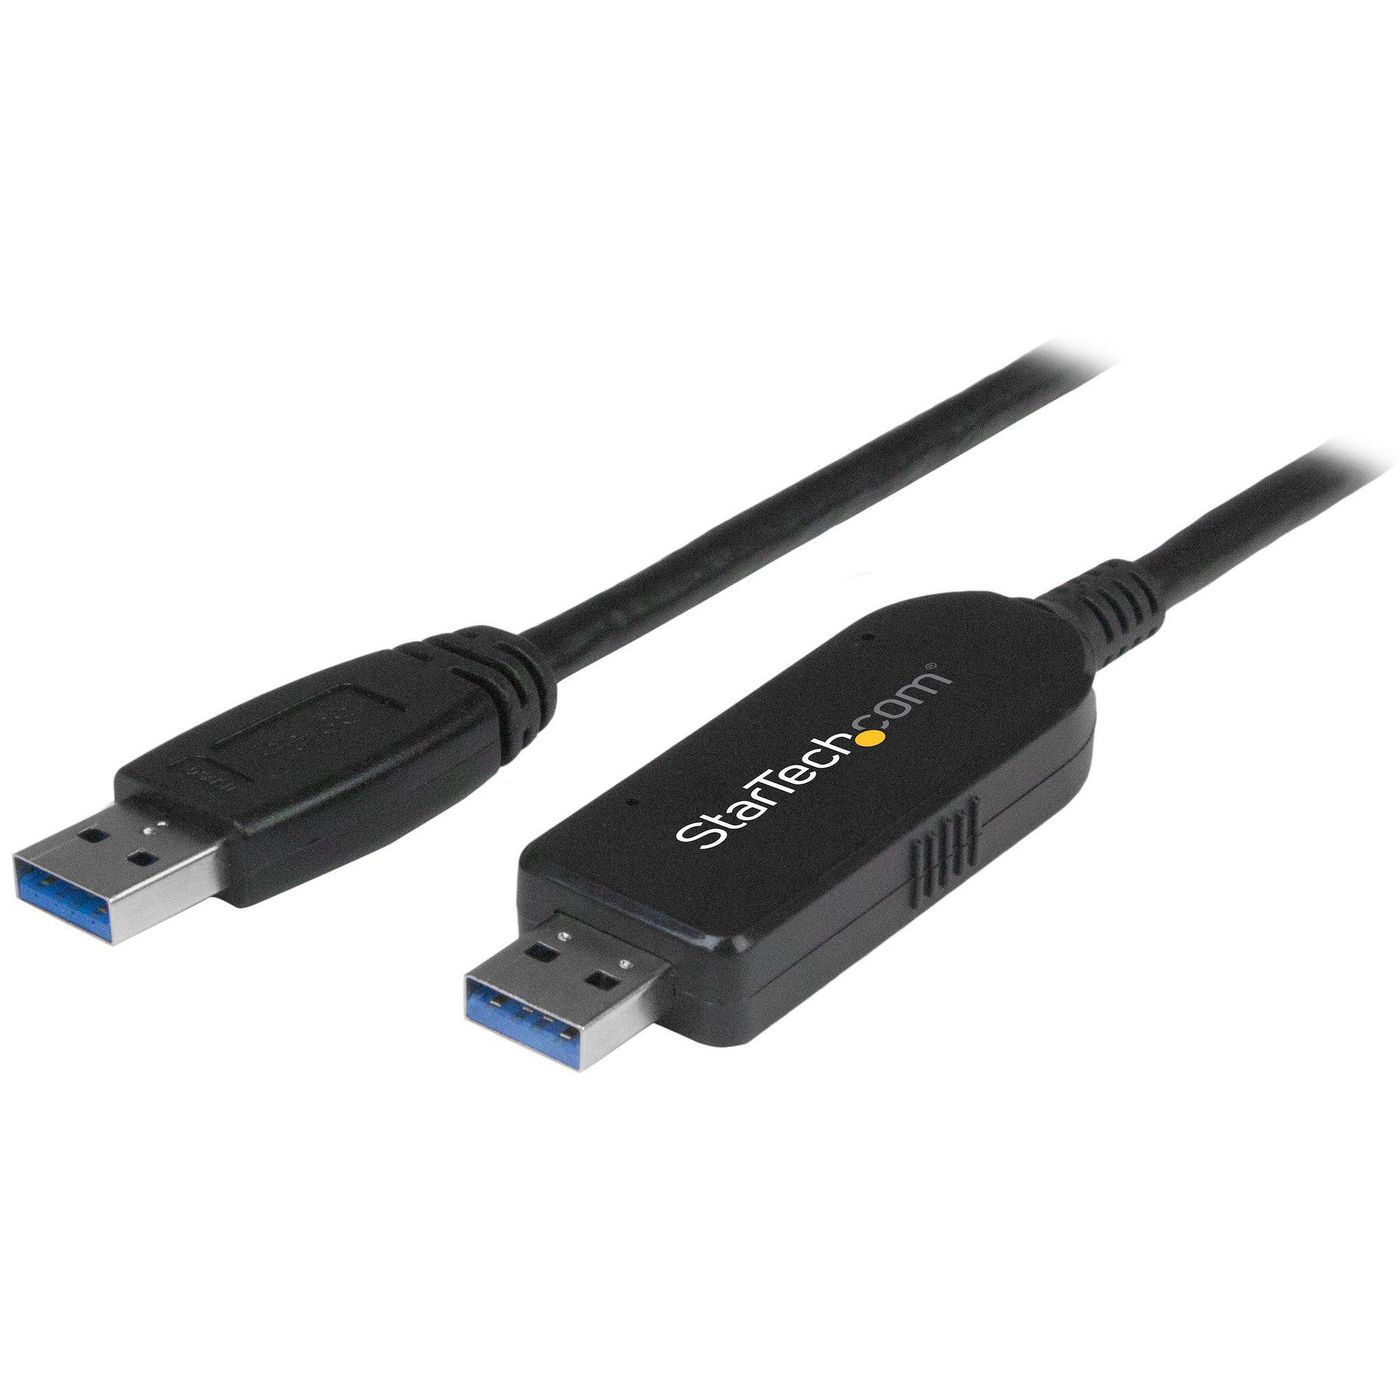 STARTECH.COM USB 3.0 Datentransferkabel für Mac und Windows - USB Transfer Kabel für einfaches Upgra